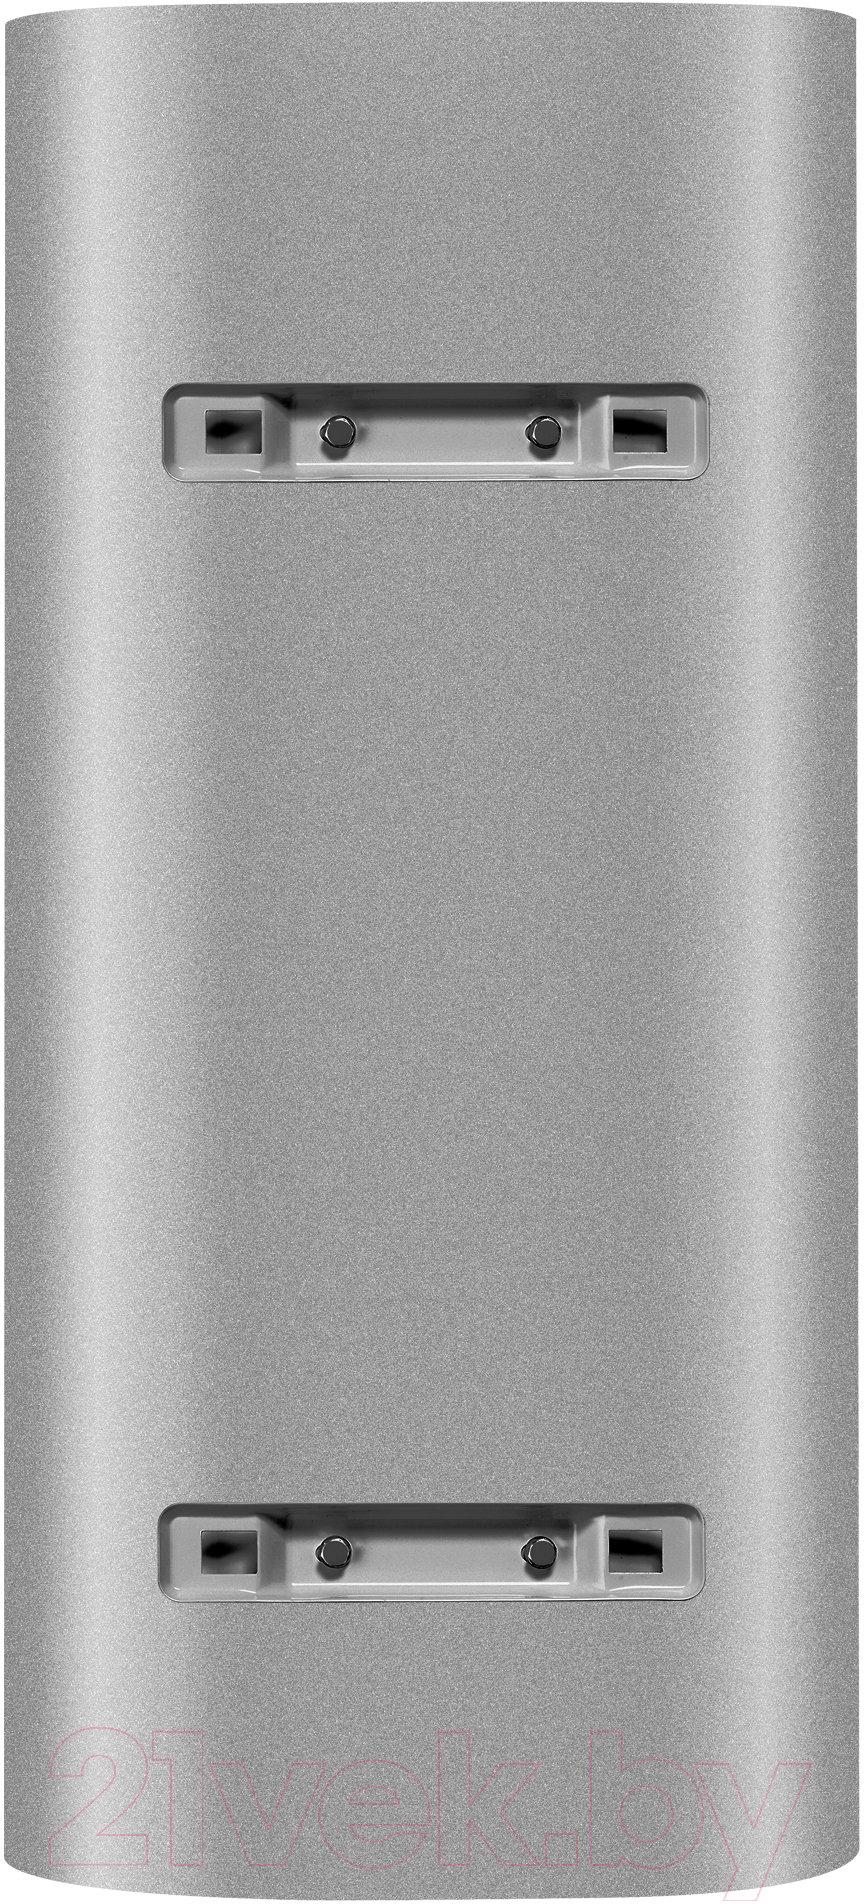 Накопительный водонагреватель Electrolux EWH 50 Centurio IQ 3.0 Silver